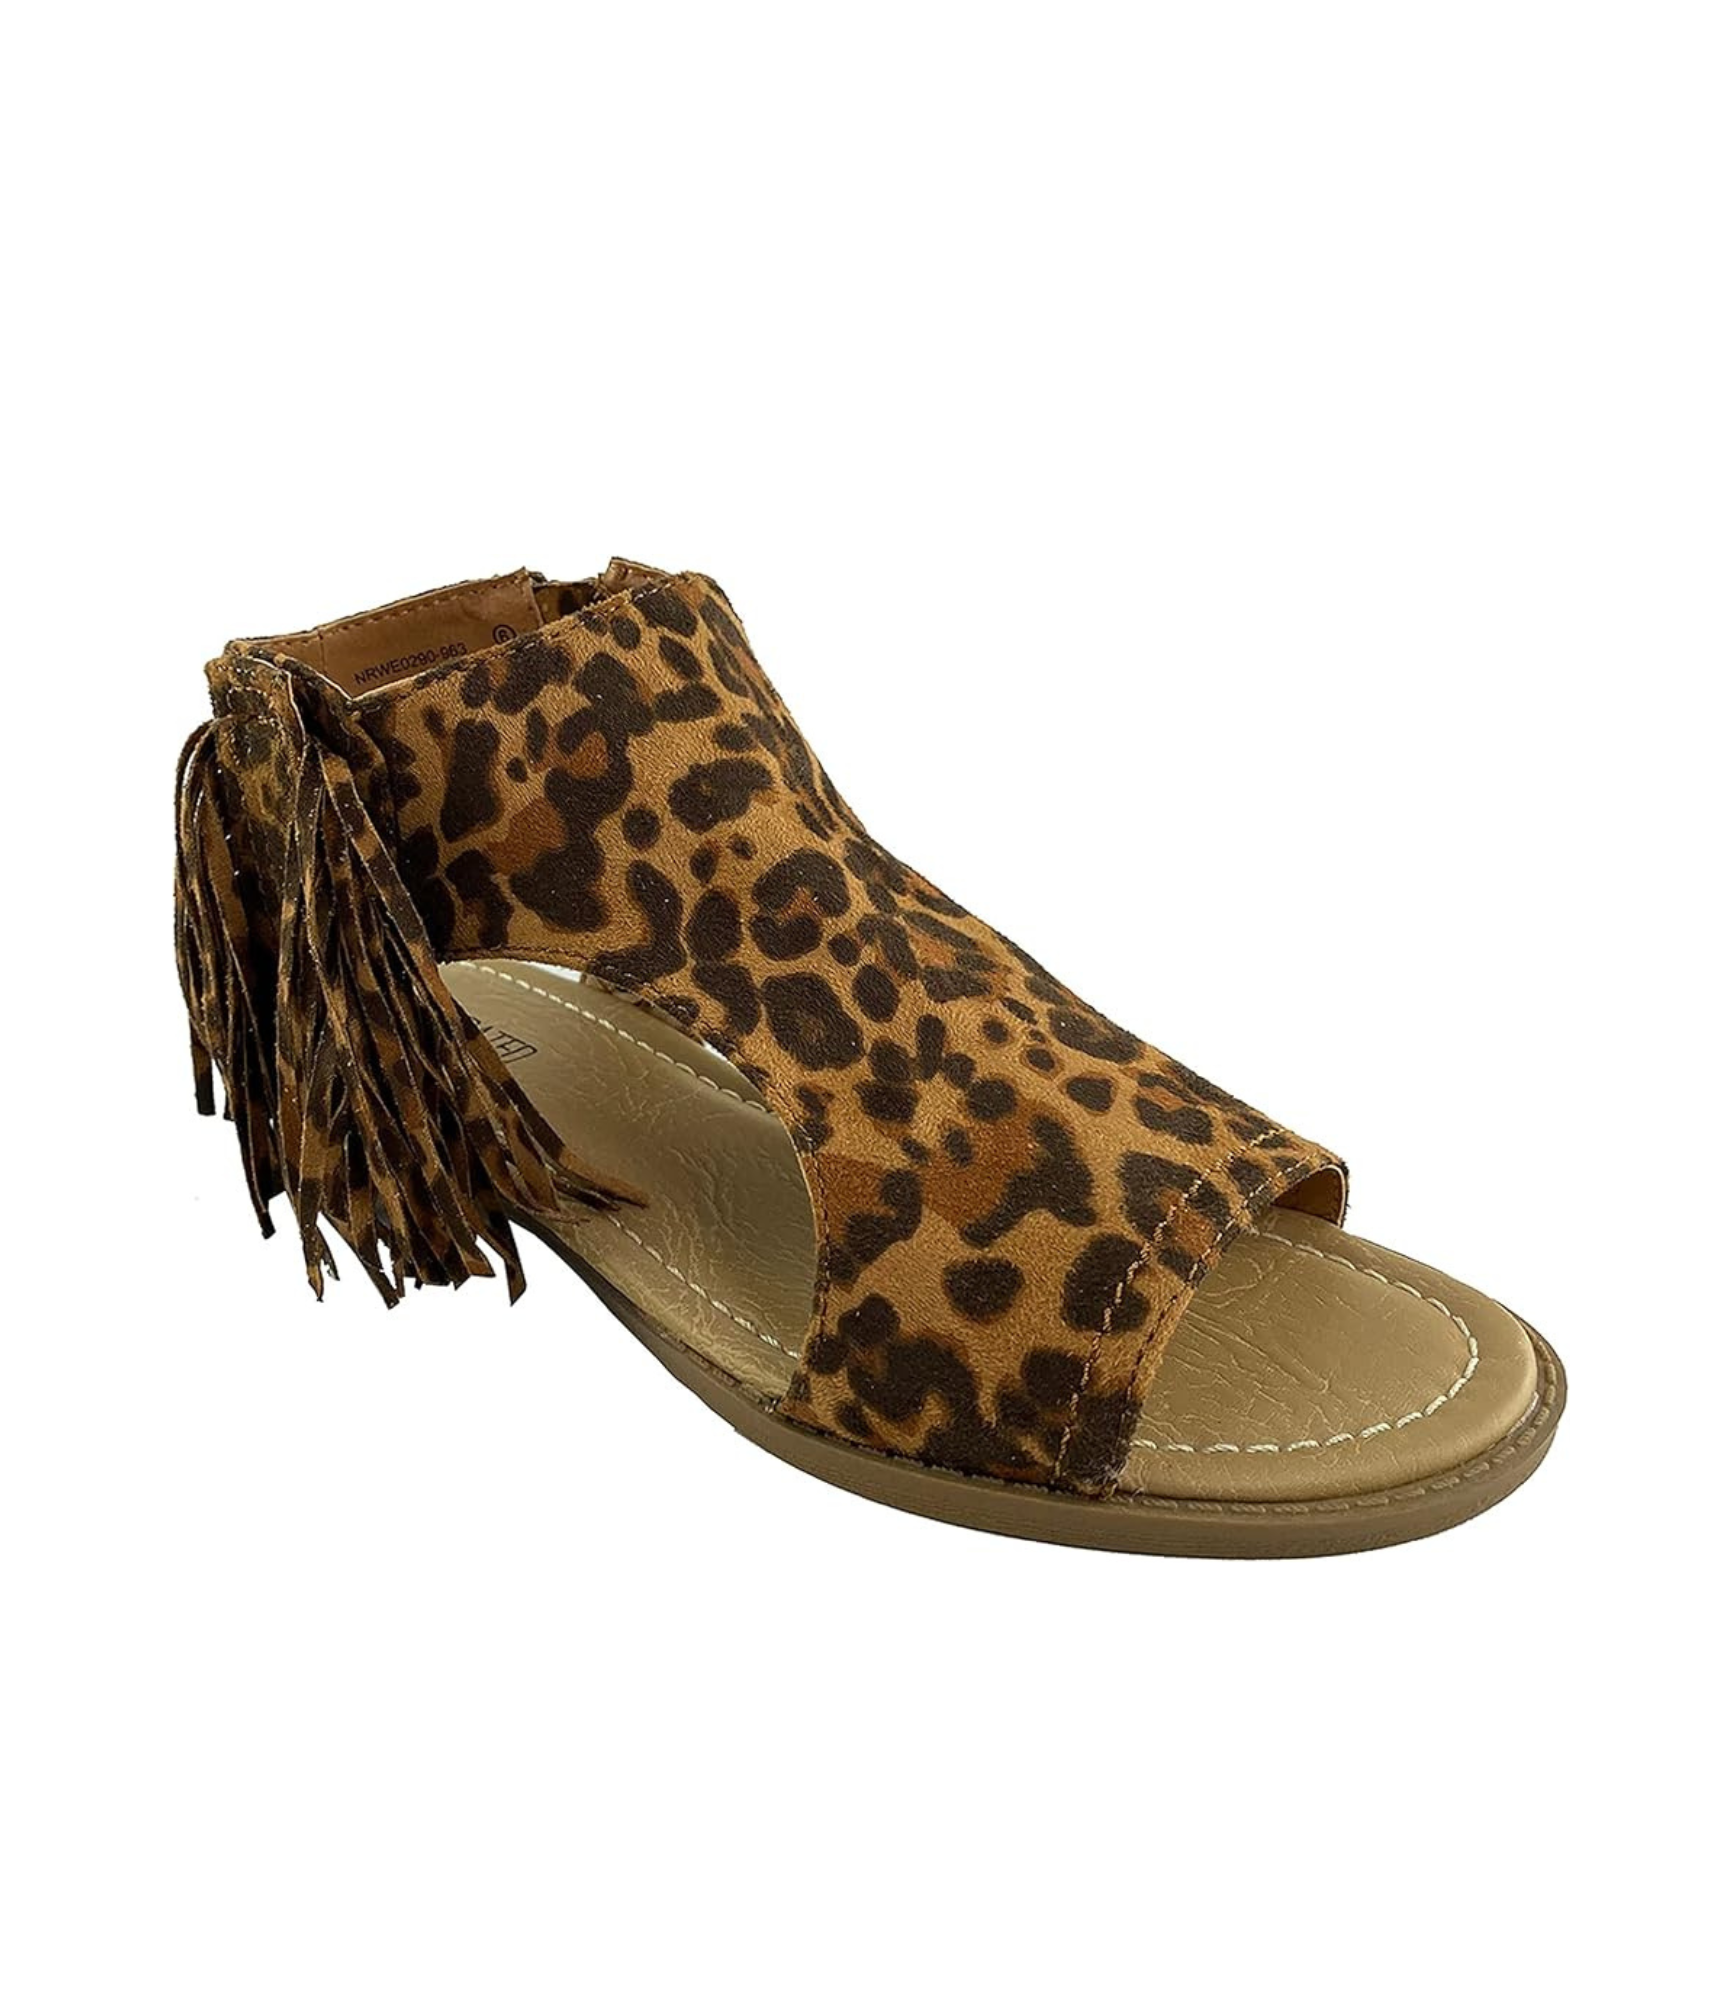 Jas Sandals in Leopard